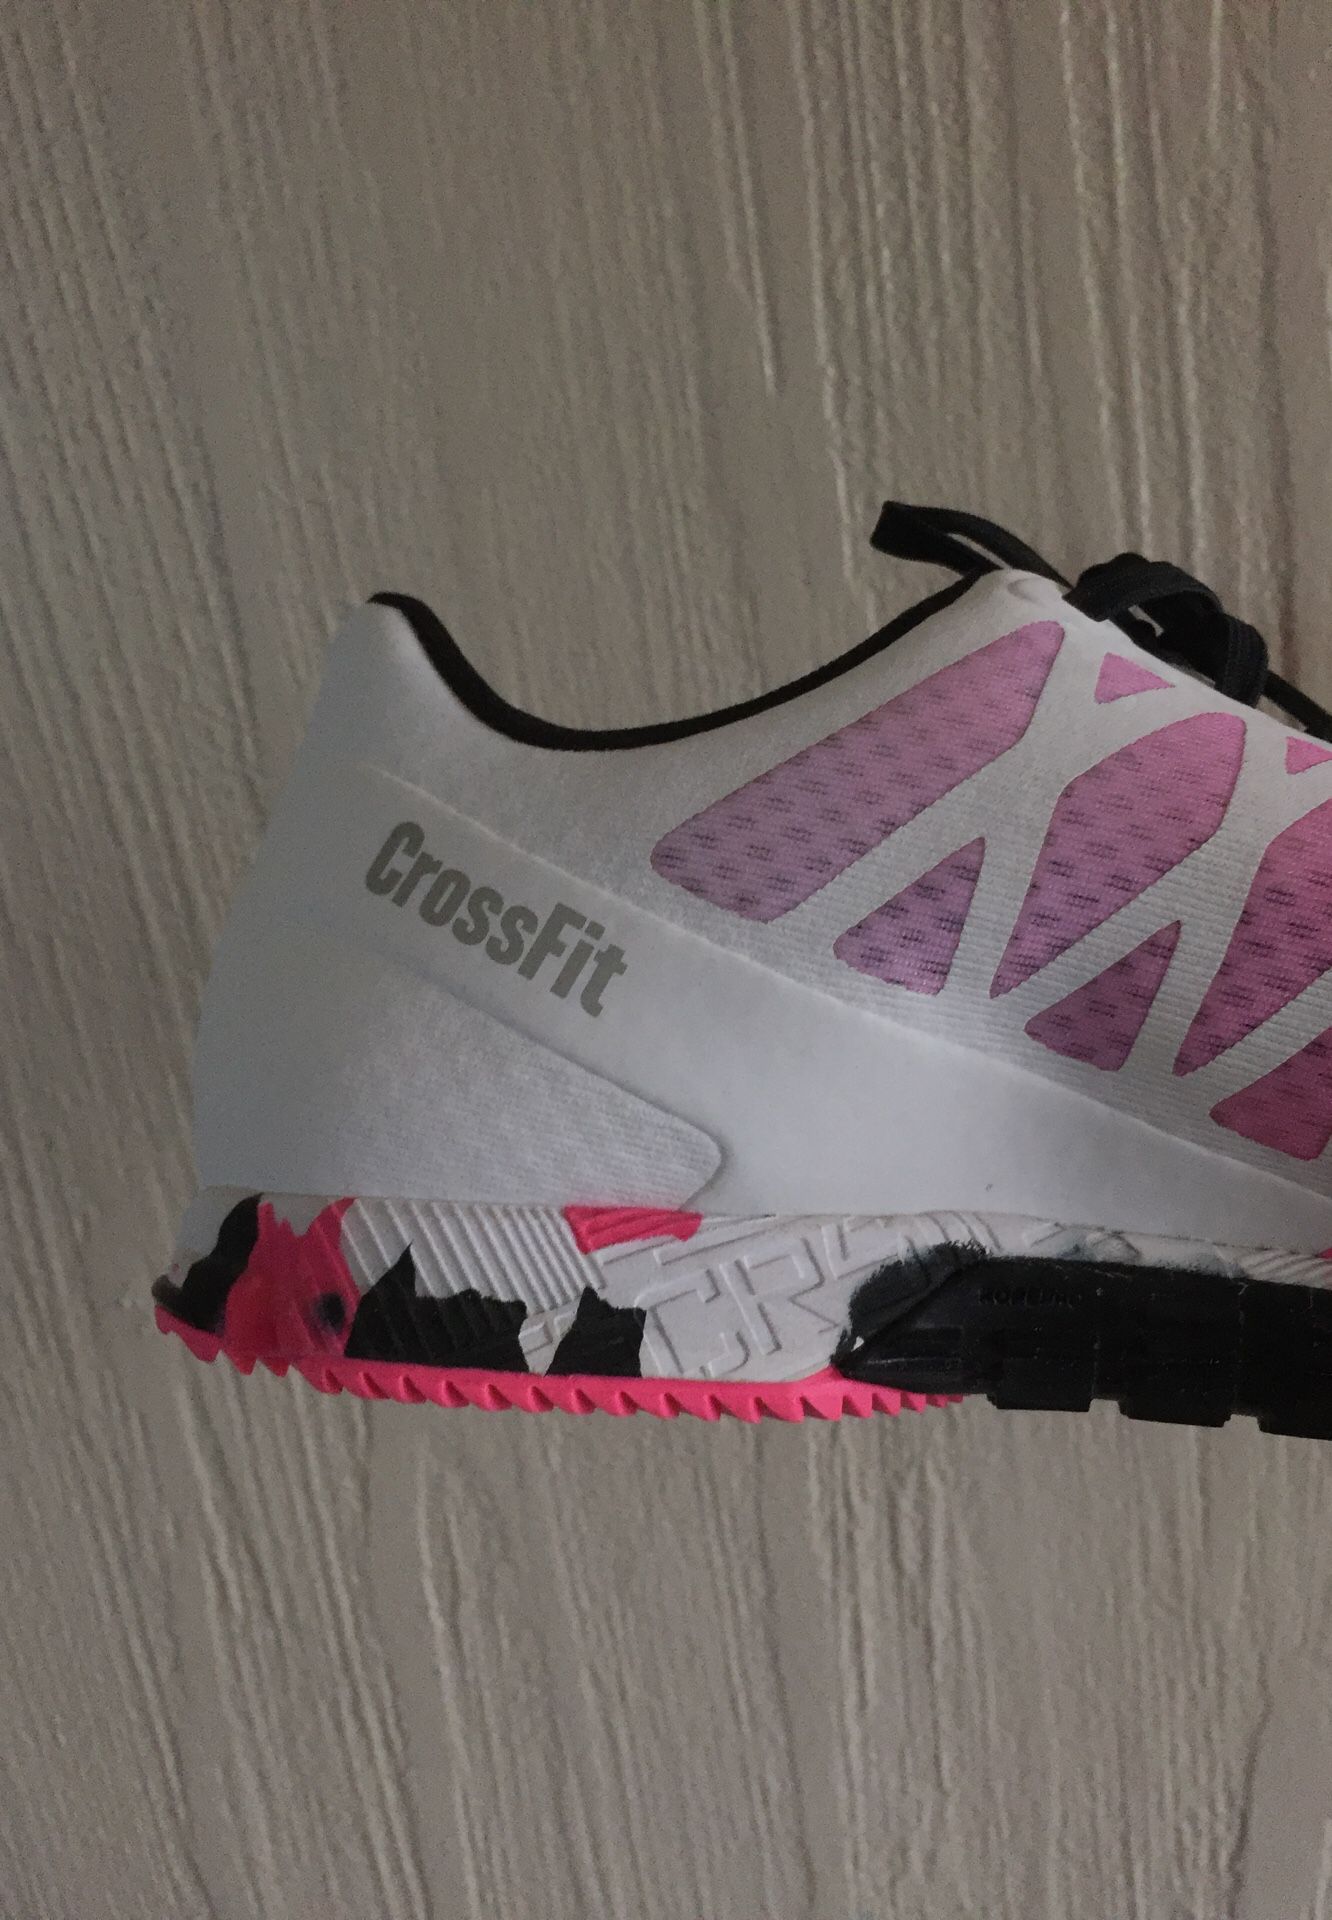 Reebok CrossFit Running shoes